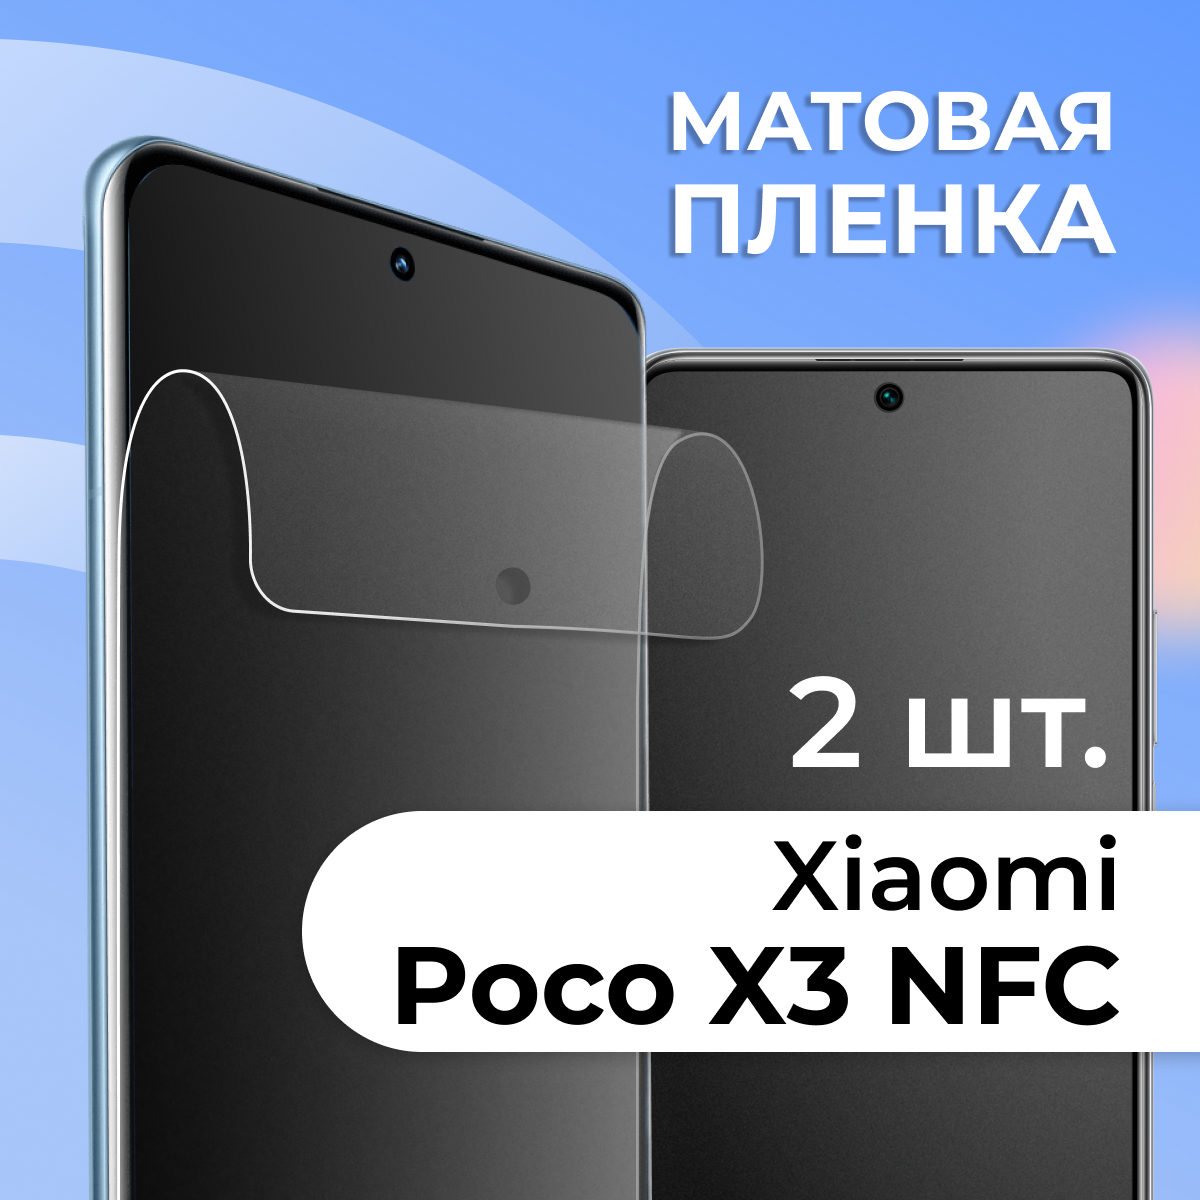 Матовая защитная пленка для смартфона Xiaomi Poco X3 NFC / Противоударная гидрогелевая пленка с матовым покрытием на телефон Сяоми Поко Х3 НФС